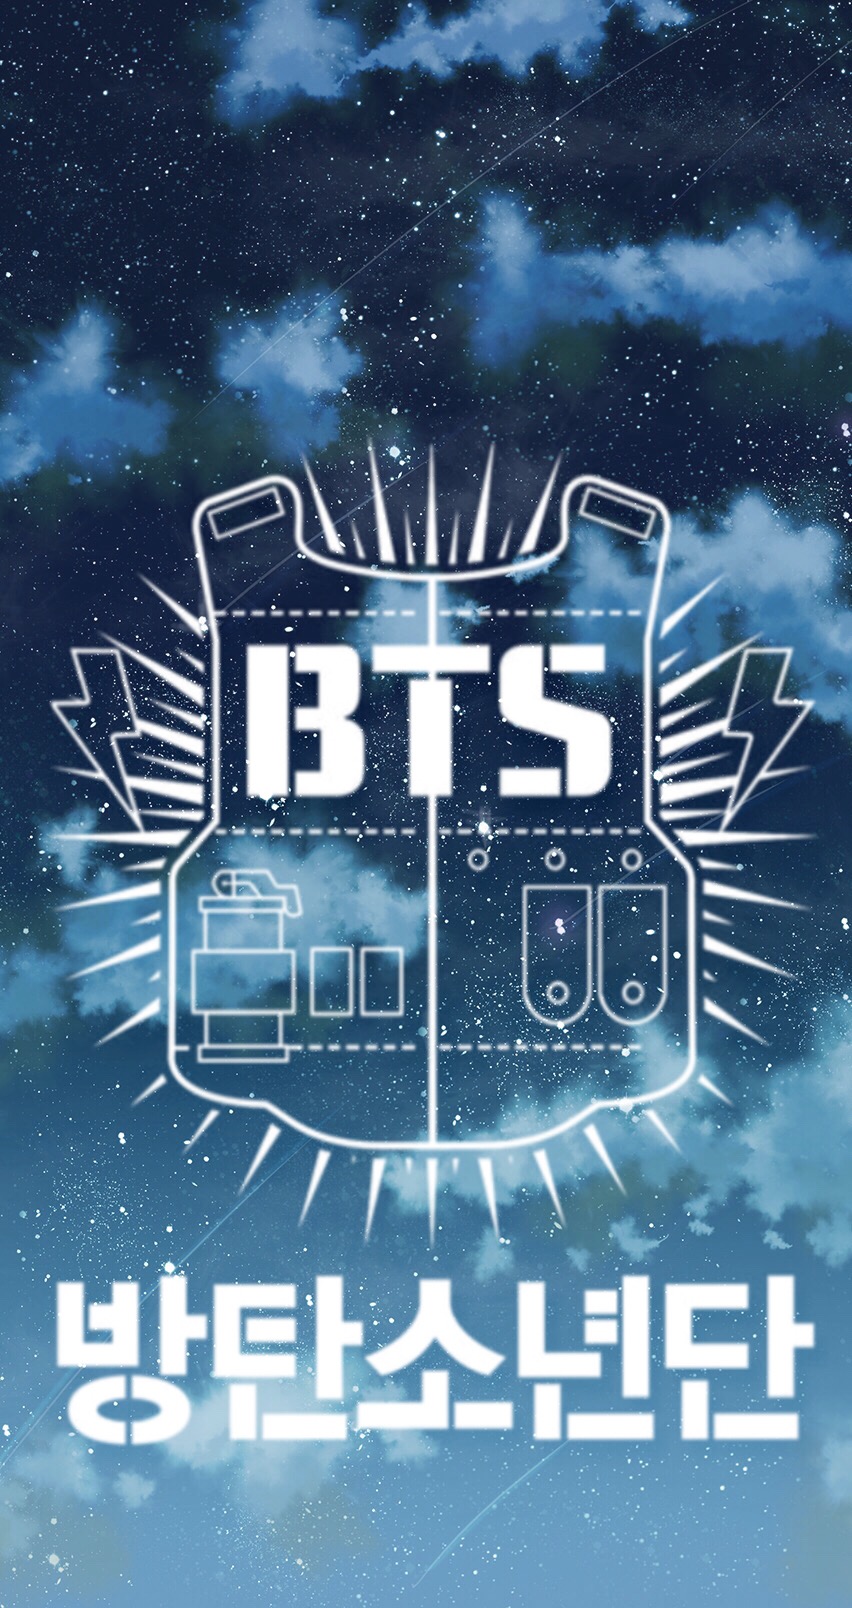 Bts wallpaper ️ bts - Image by BTS EDITS